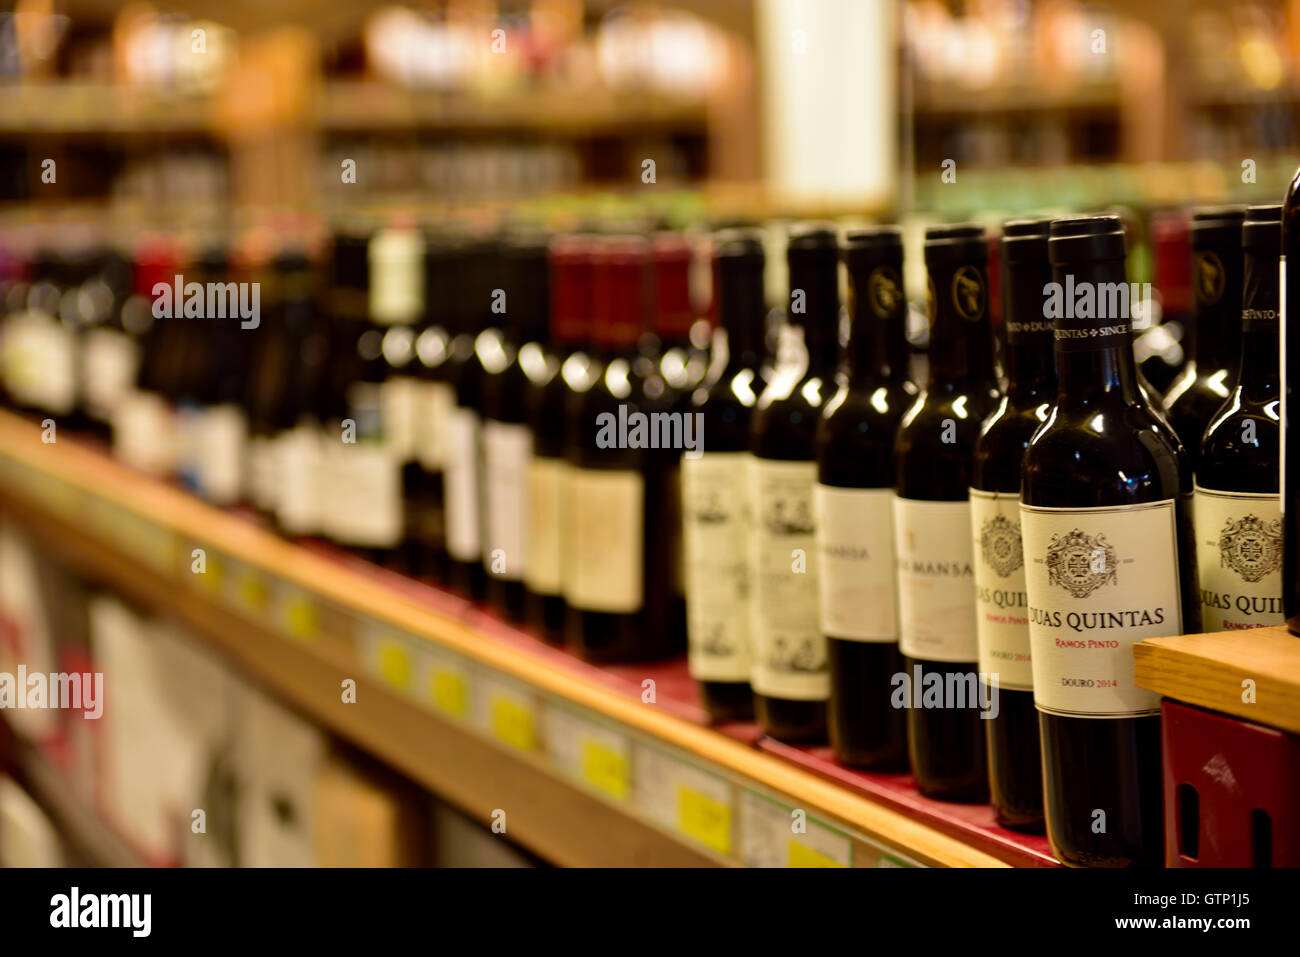 Bottles of wine on shelves in store Stock Photo